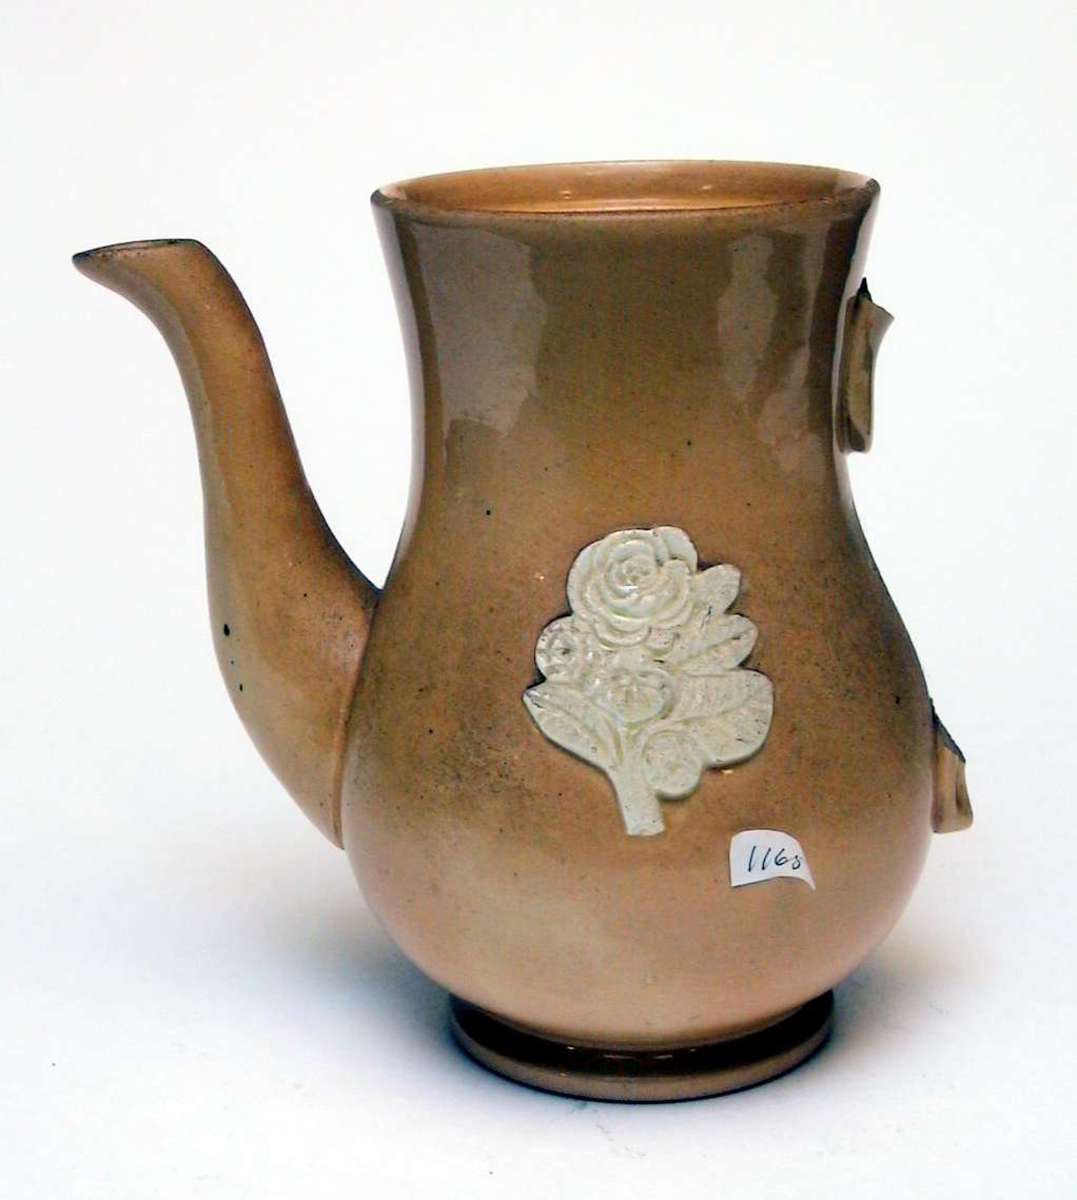 Kaffekanne av gul keramikk med påsatt blomsterdekor. Dekoren er elfenbenshvit. Lokket og hanken mangler.
Kannen har ingen produksjonsmerker. 